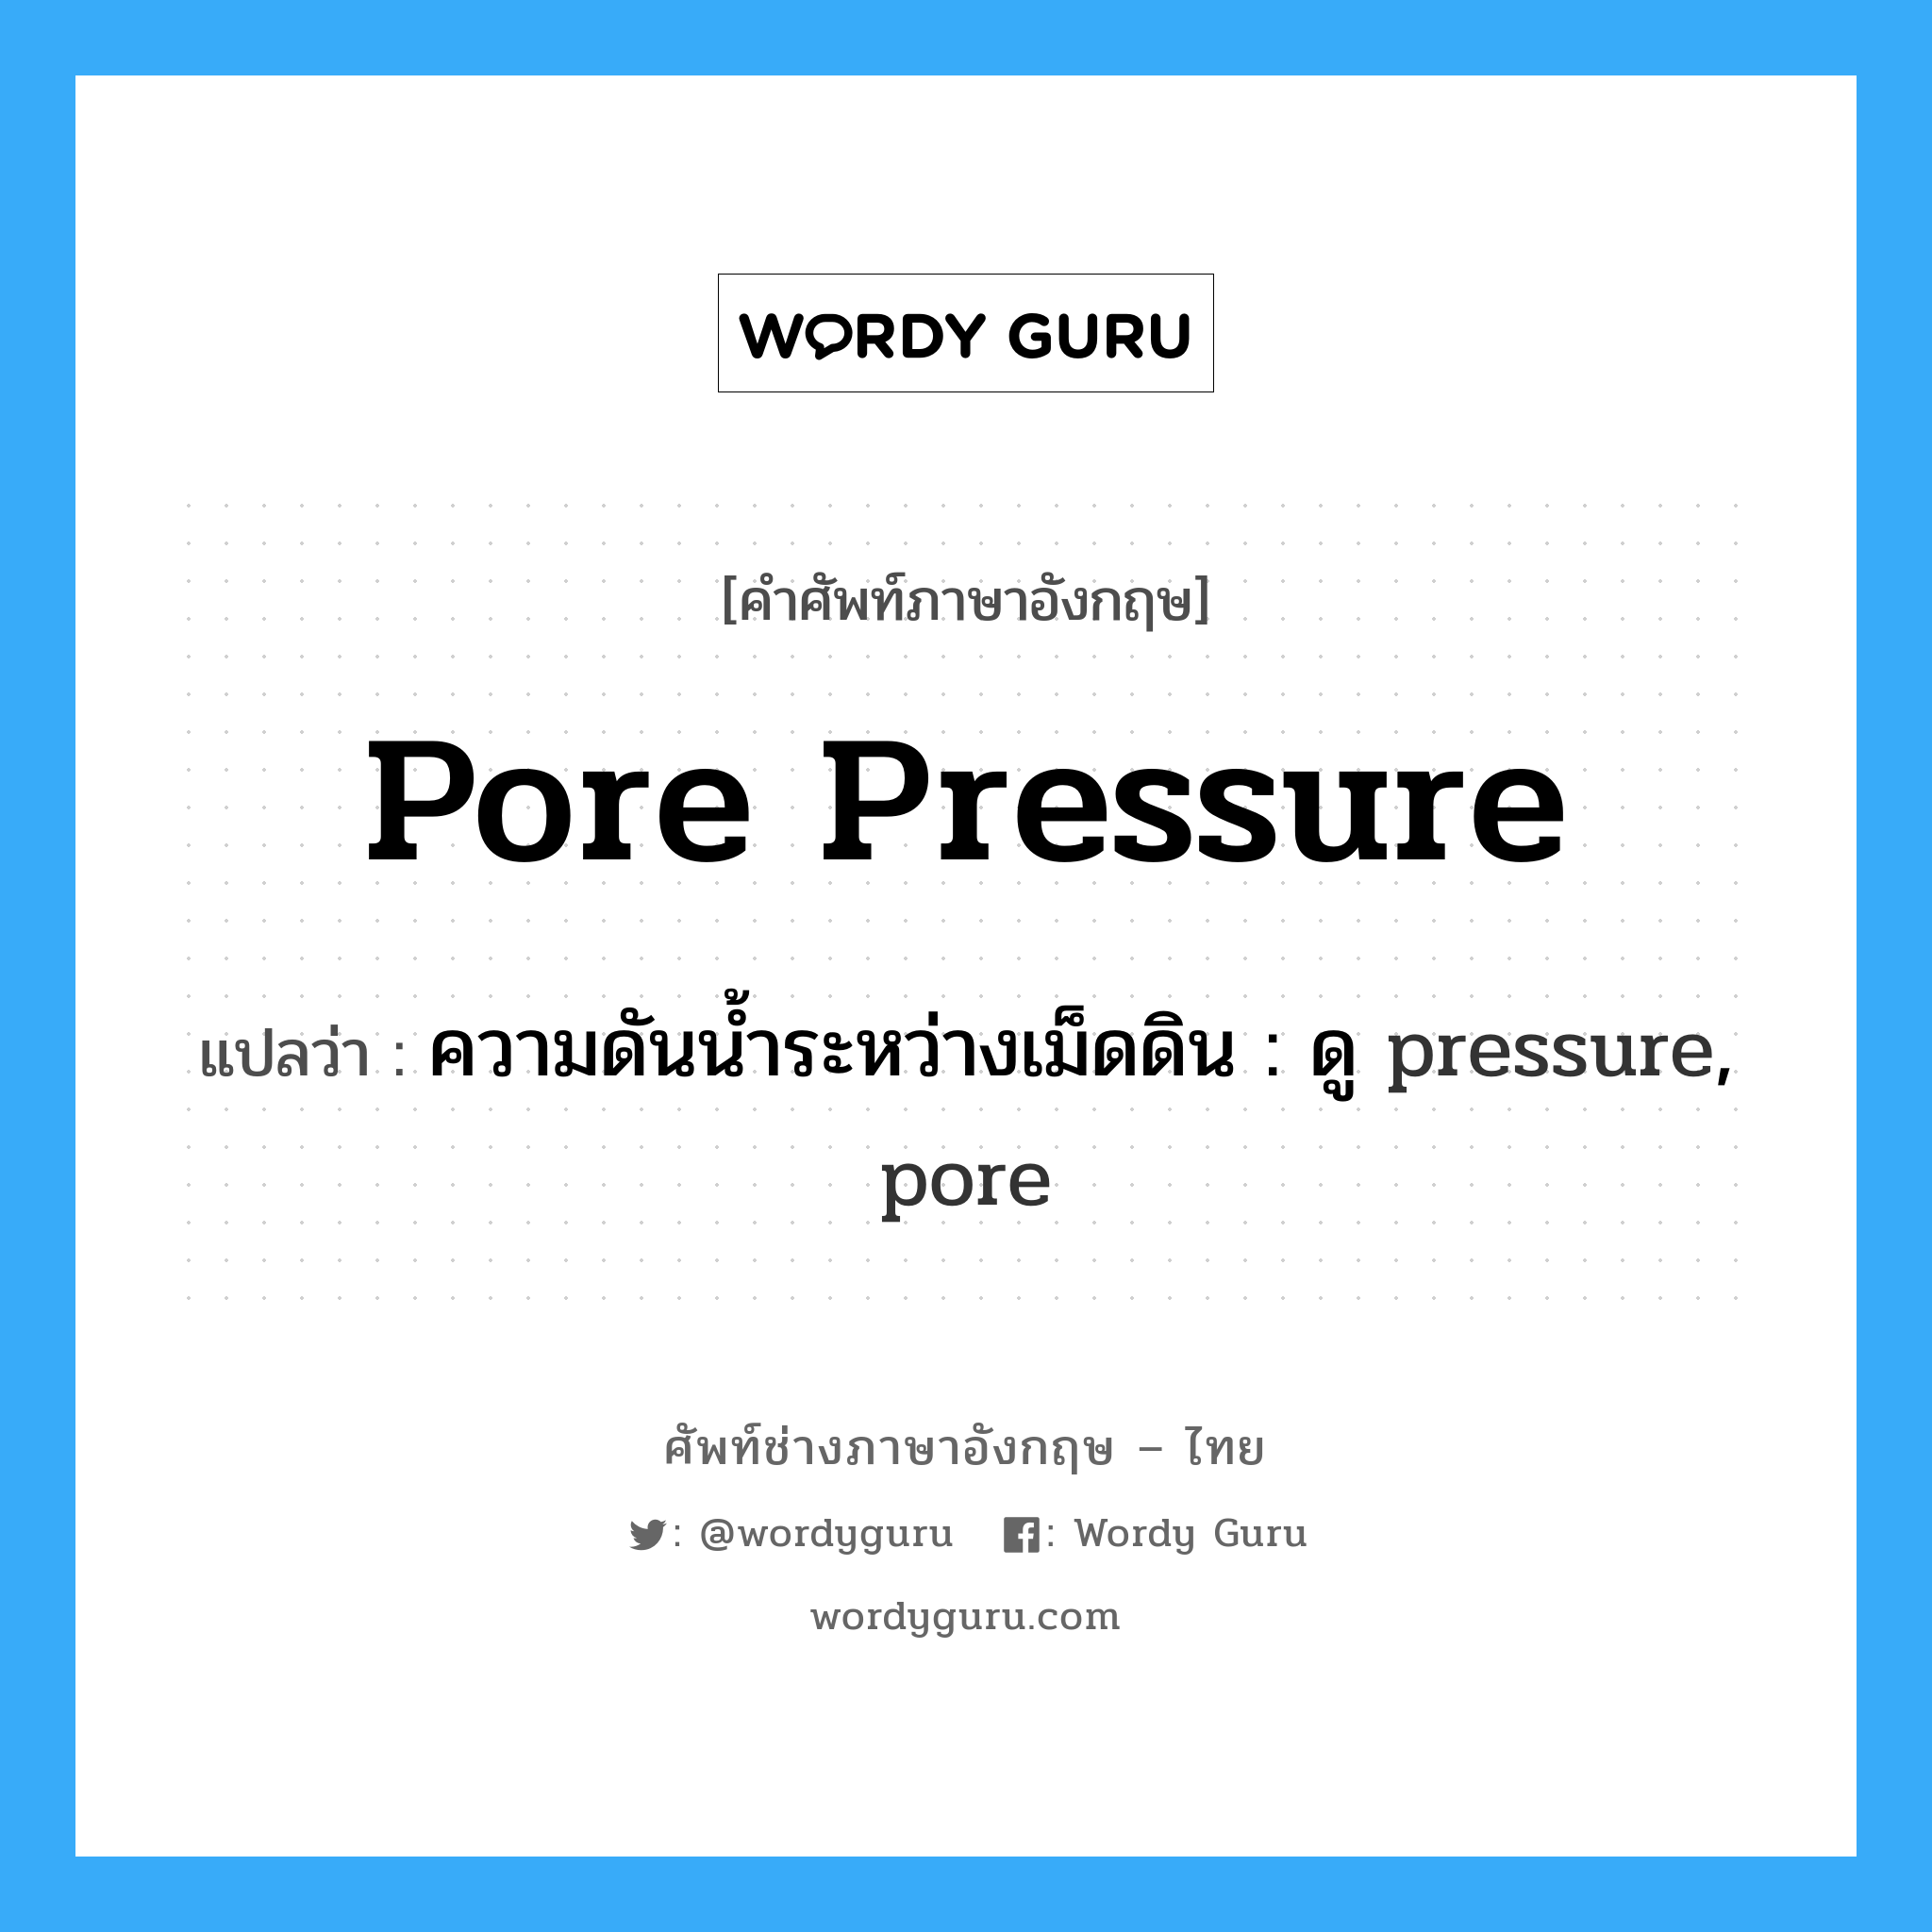 ความดันน้ำระหว่างเม็ดดิน : ดู pressure, pore ภาษาอังกฤษ?, คำศัพท์ช่างภาษาอังกฤษ - ไทย ความดันน้ำระหว่างเม็ดดิน : ดู pressure, pore คำศัพท์ภาษาอังกฤษ ความดันน้ำระหว่างเม็ดดิน : ดู pressure, pore แปลว่า pore pressure